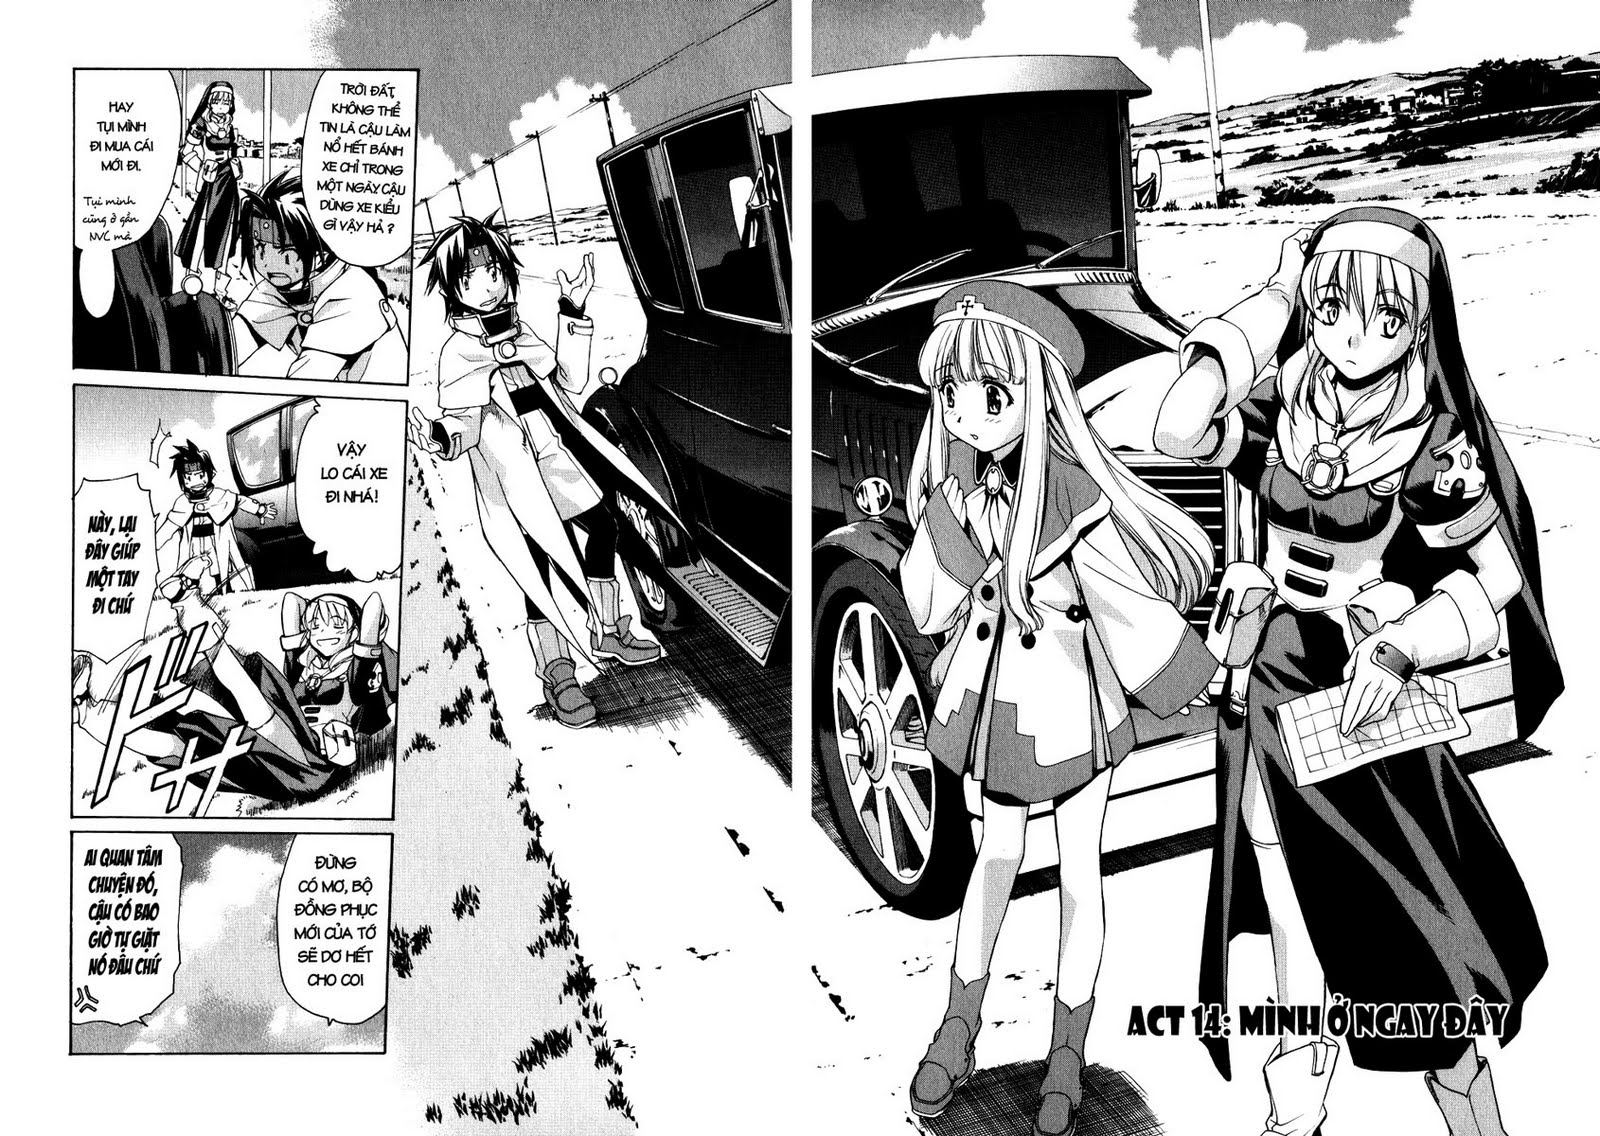 [Manga] Chrono Crusade (Đọc online tại SSF) Chap%252014-01